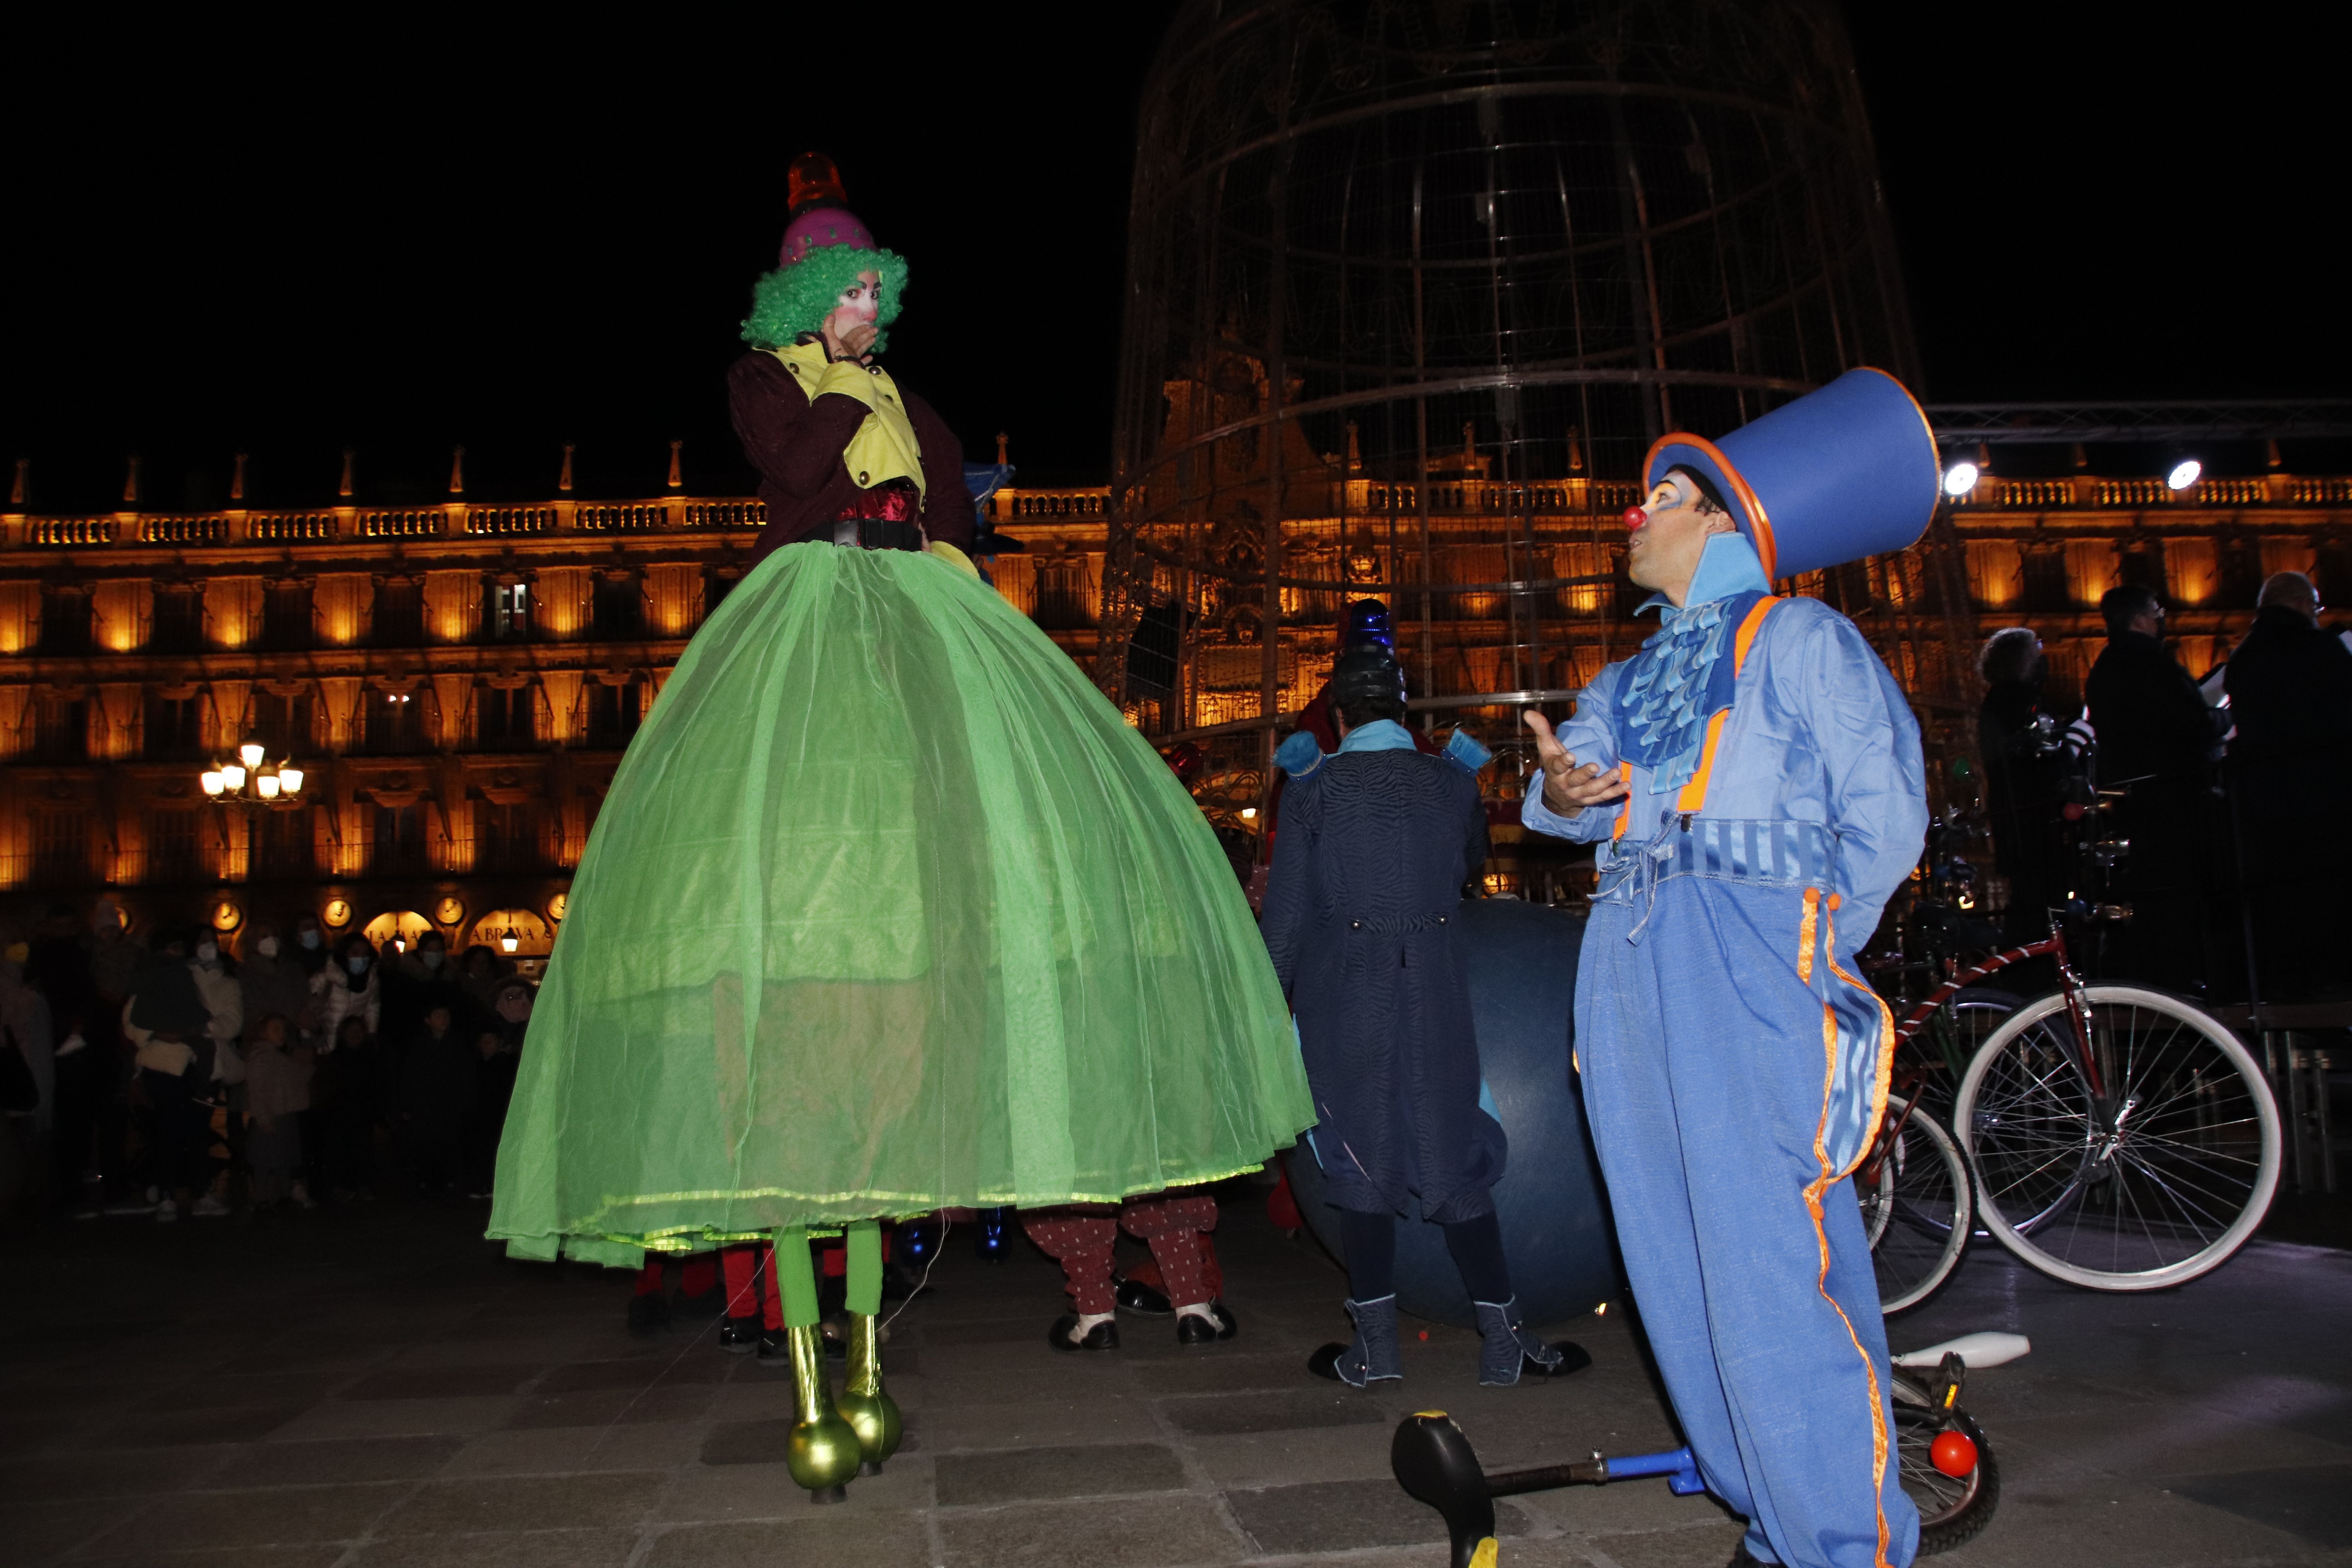 Acto cultural de Navidad en la Plaza Mayor | Fotos Andrea M